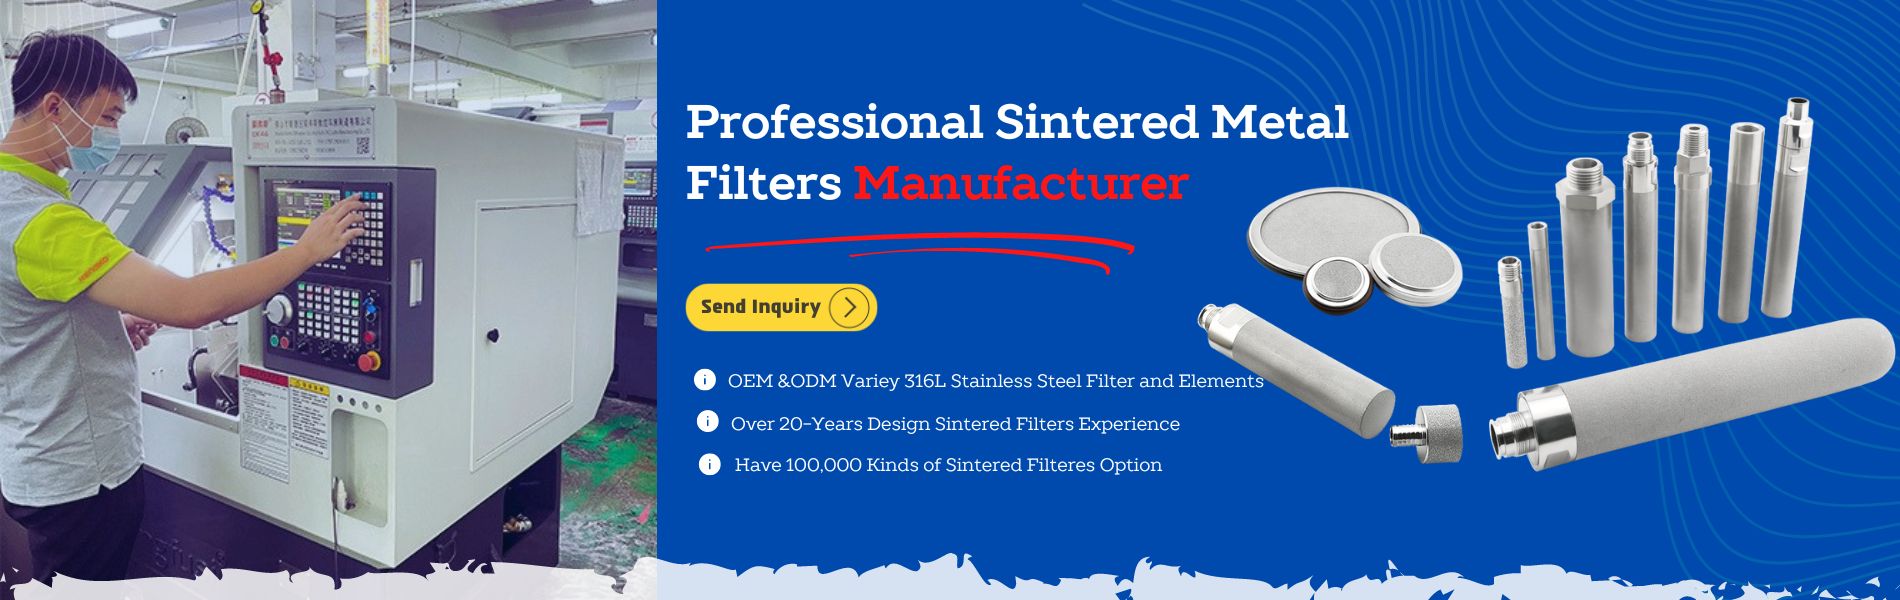 Produttore professionale di filtri in metallo sinterizzato